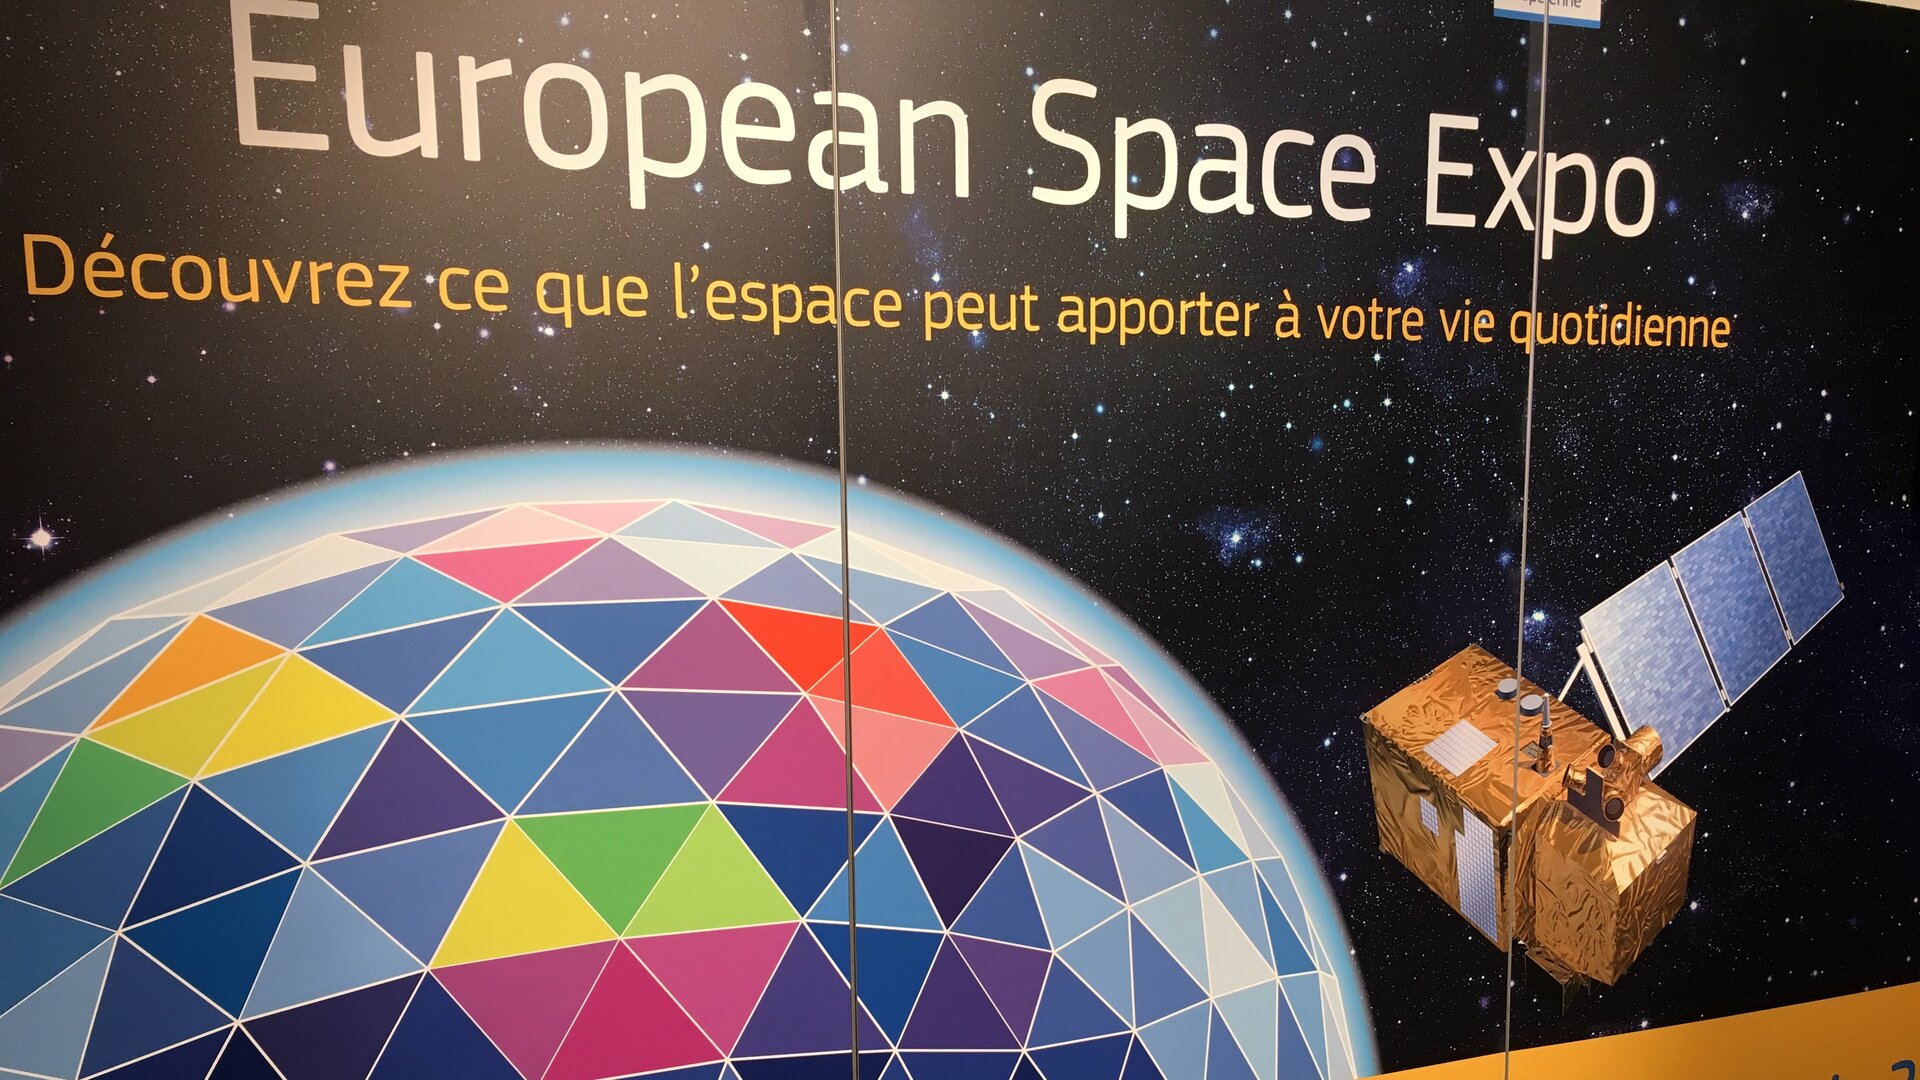 L’Espace s’invite sur terre, sur le parvis de la gare Montparnasse à Paris du 20 au 29 juin